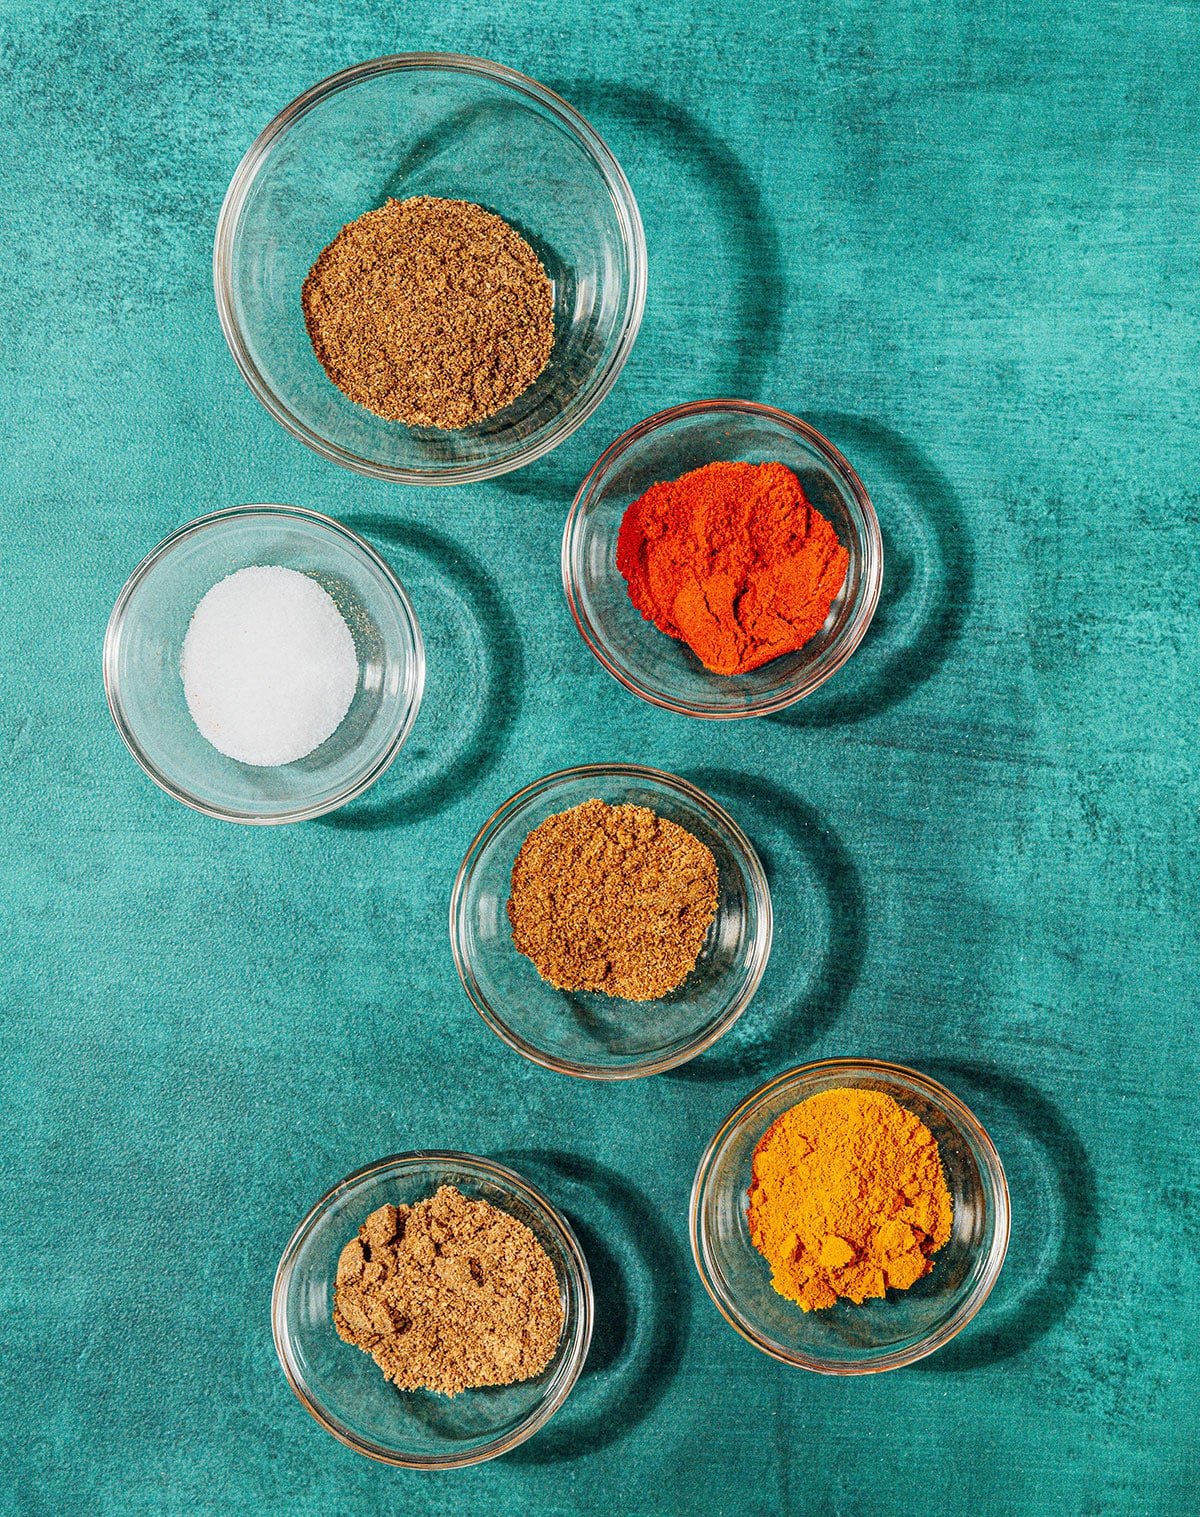 Spices to make tikka masala.